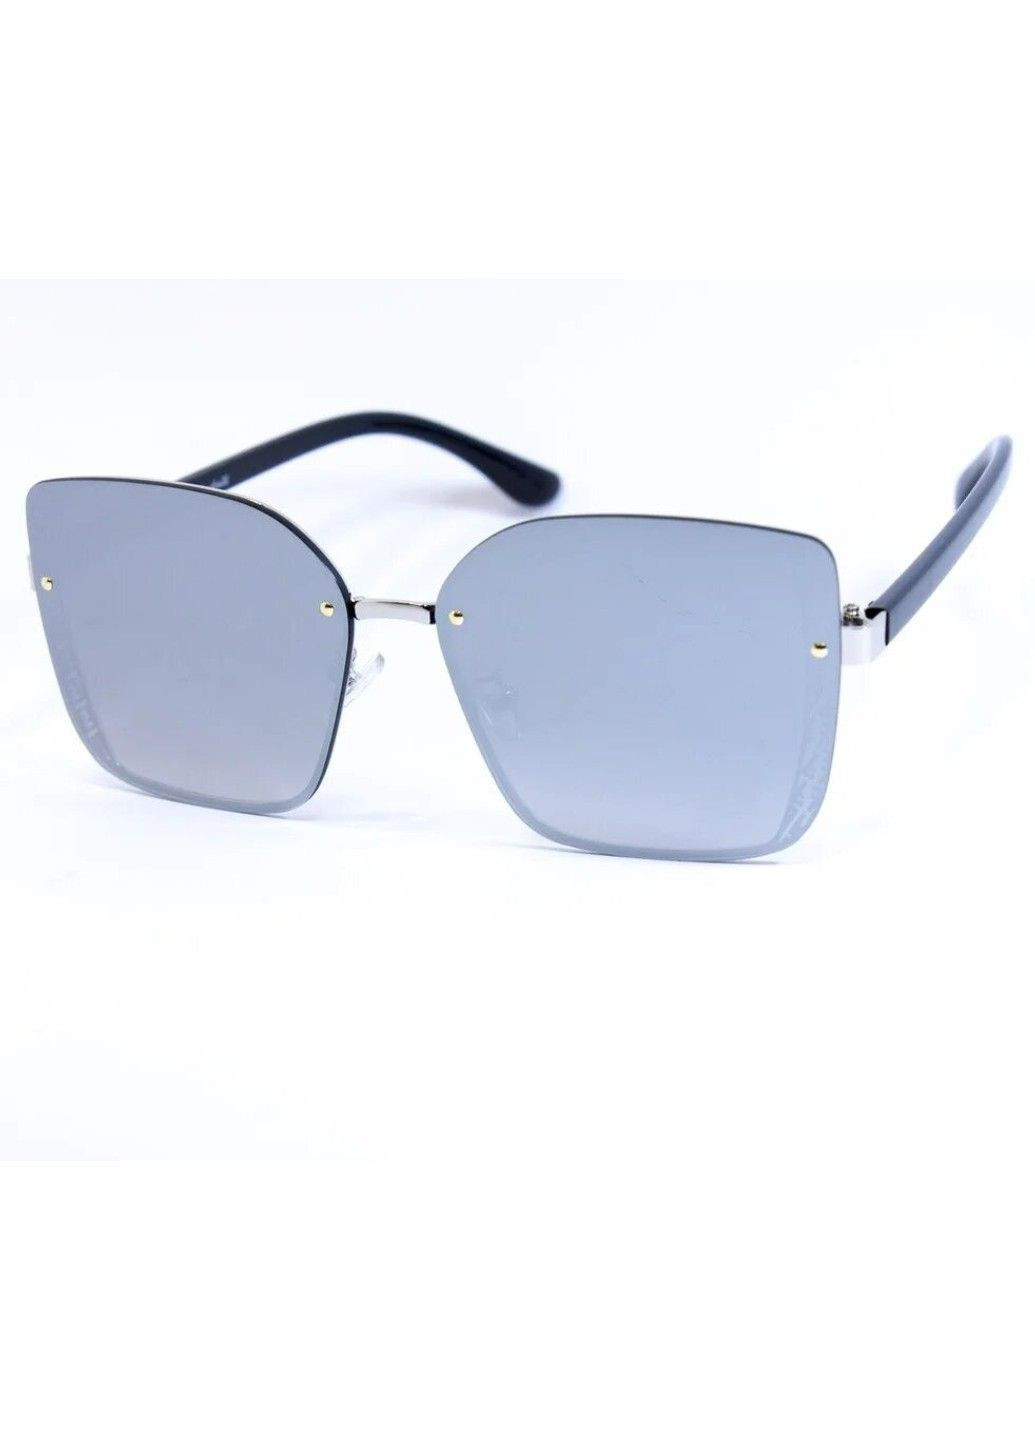 Cолнцезащитные женские очки 0391-6 BR-S (291984156)